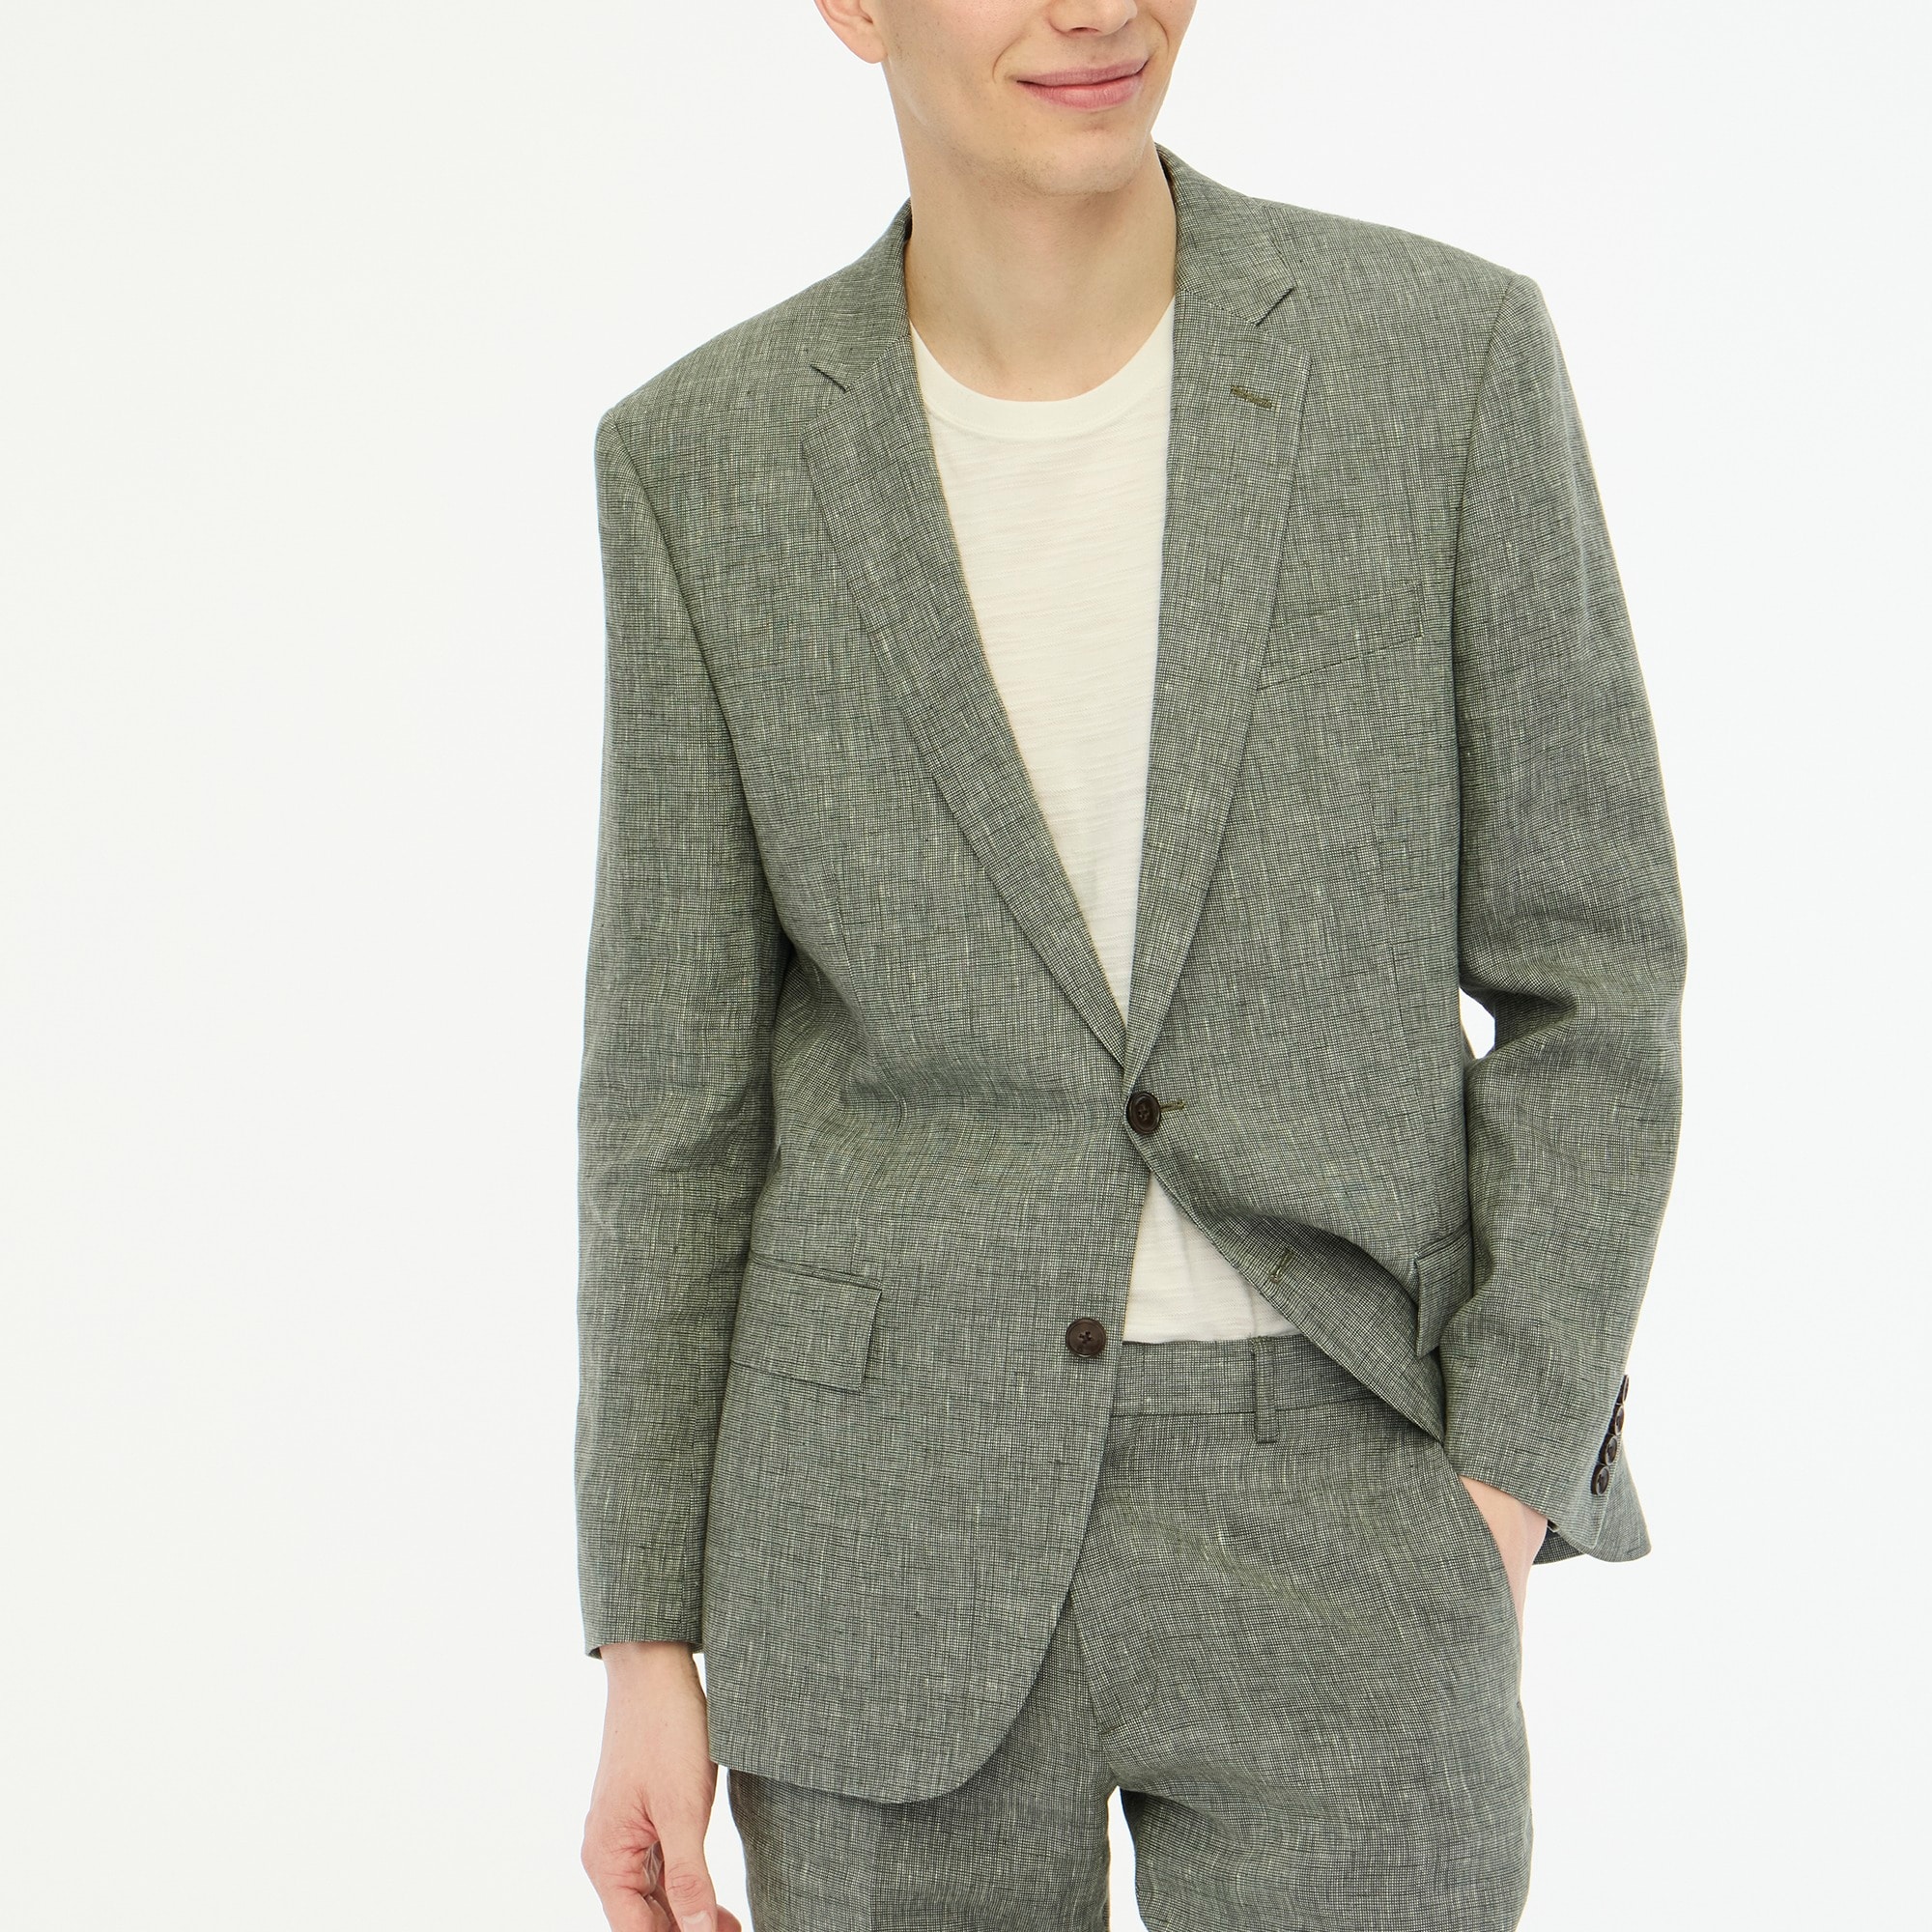  Slim-fit Thompson linen suit jacket